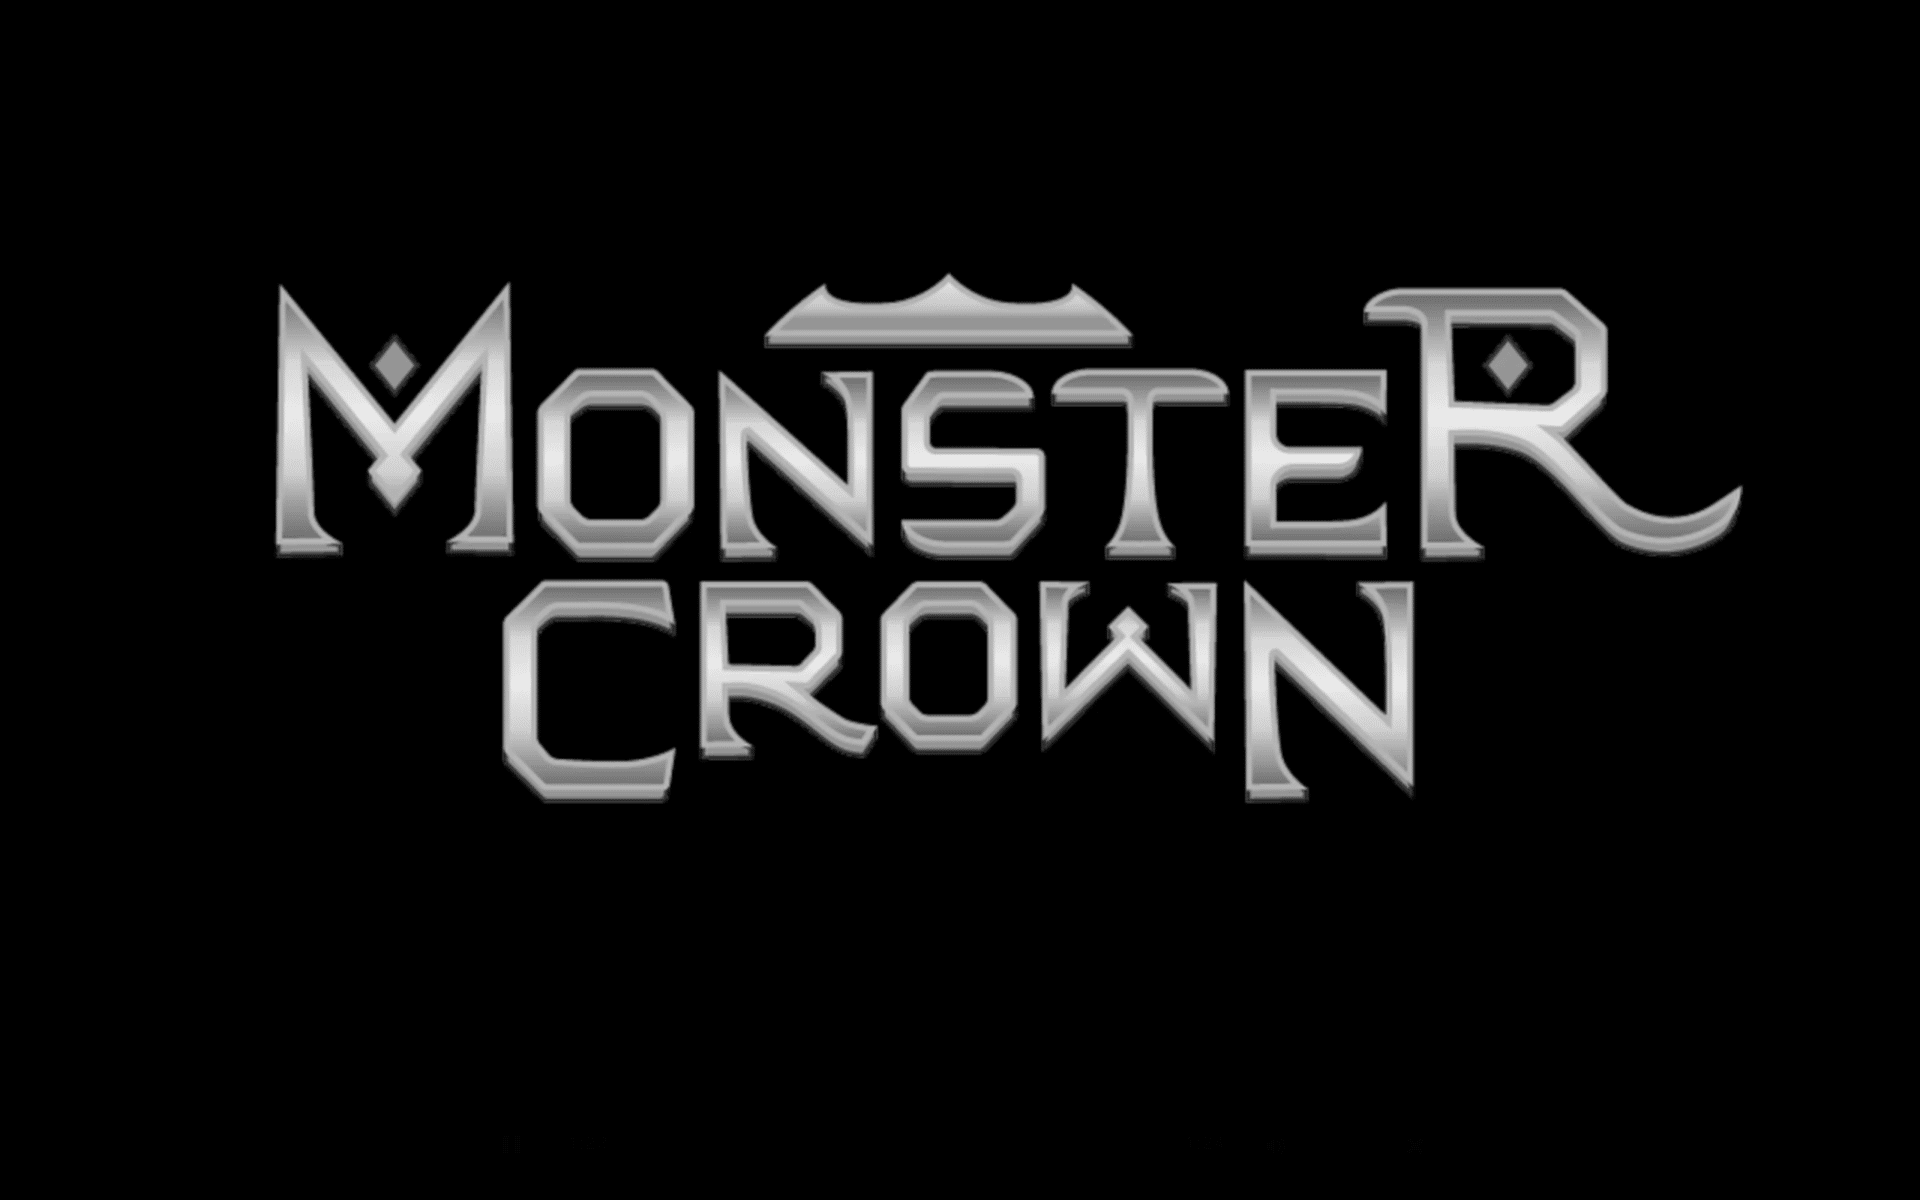 RPG Monster Crown is coming